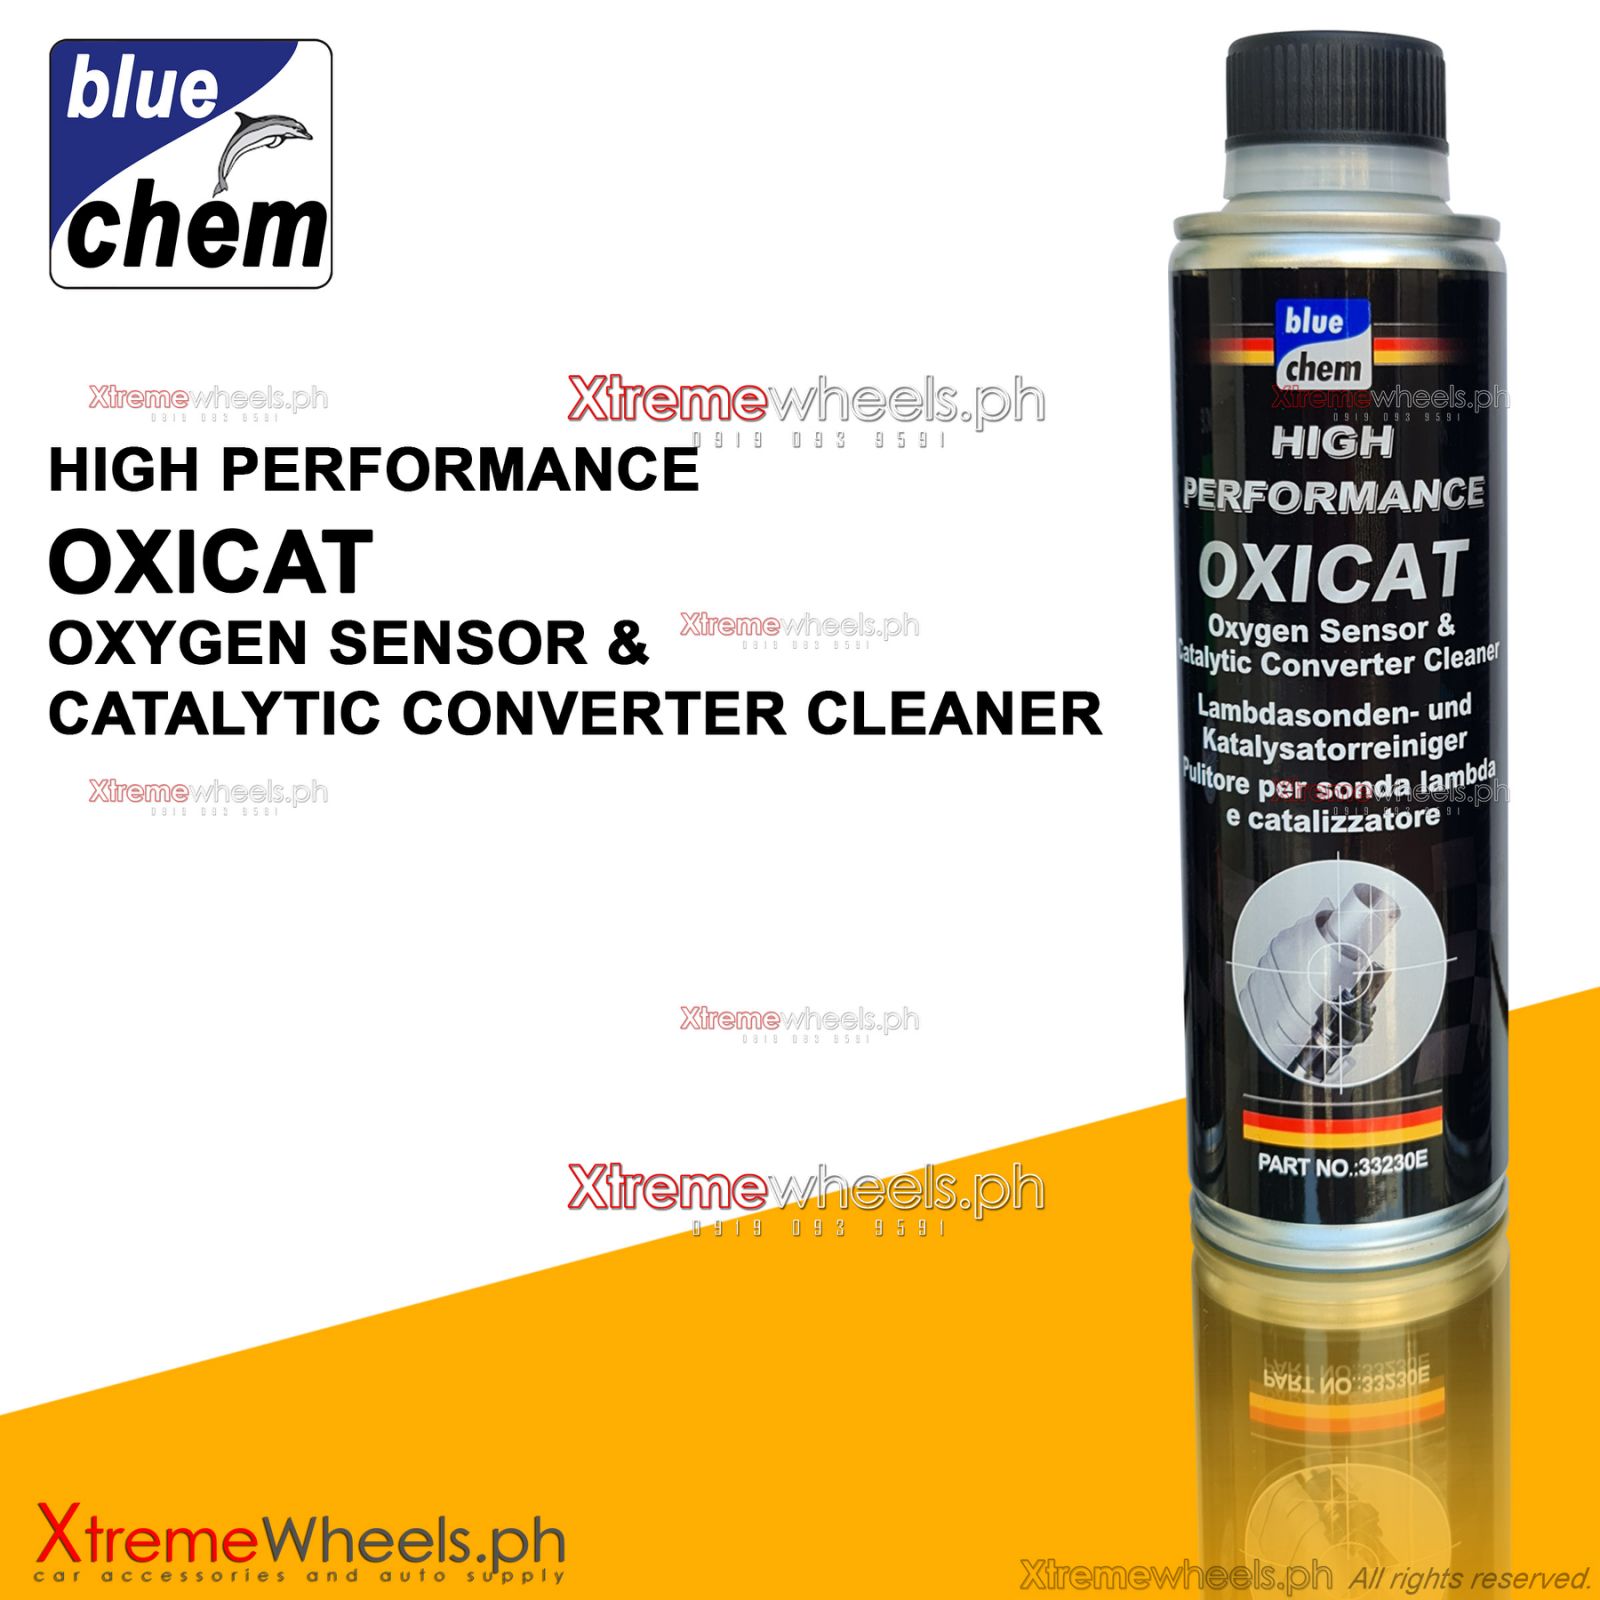 OXICAT – Lambdasonden- und Katalysatorreiniger - bluechemGROUP